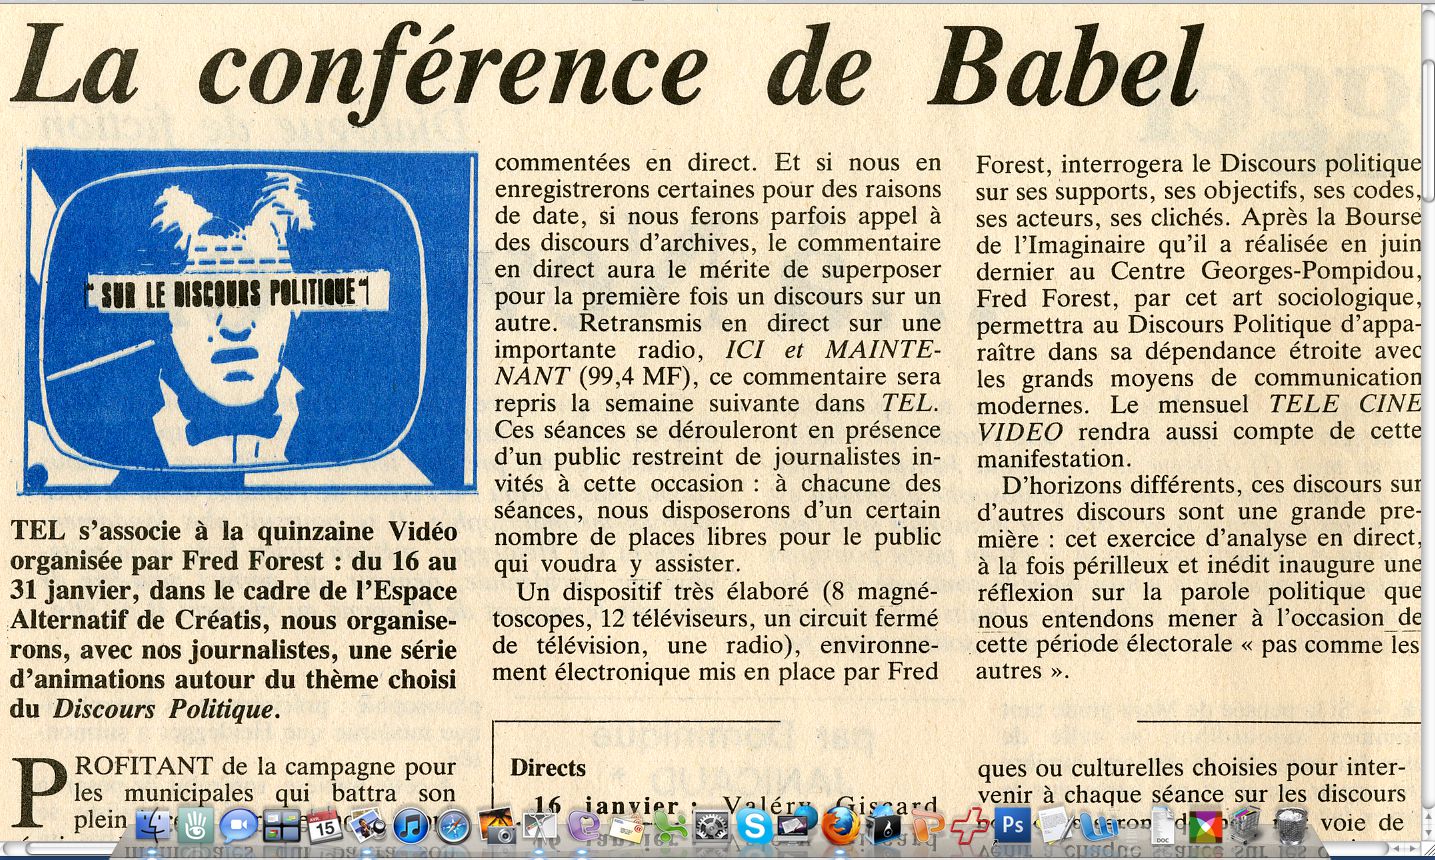 1983 Conférence de Babel